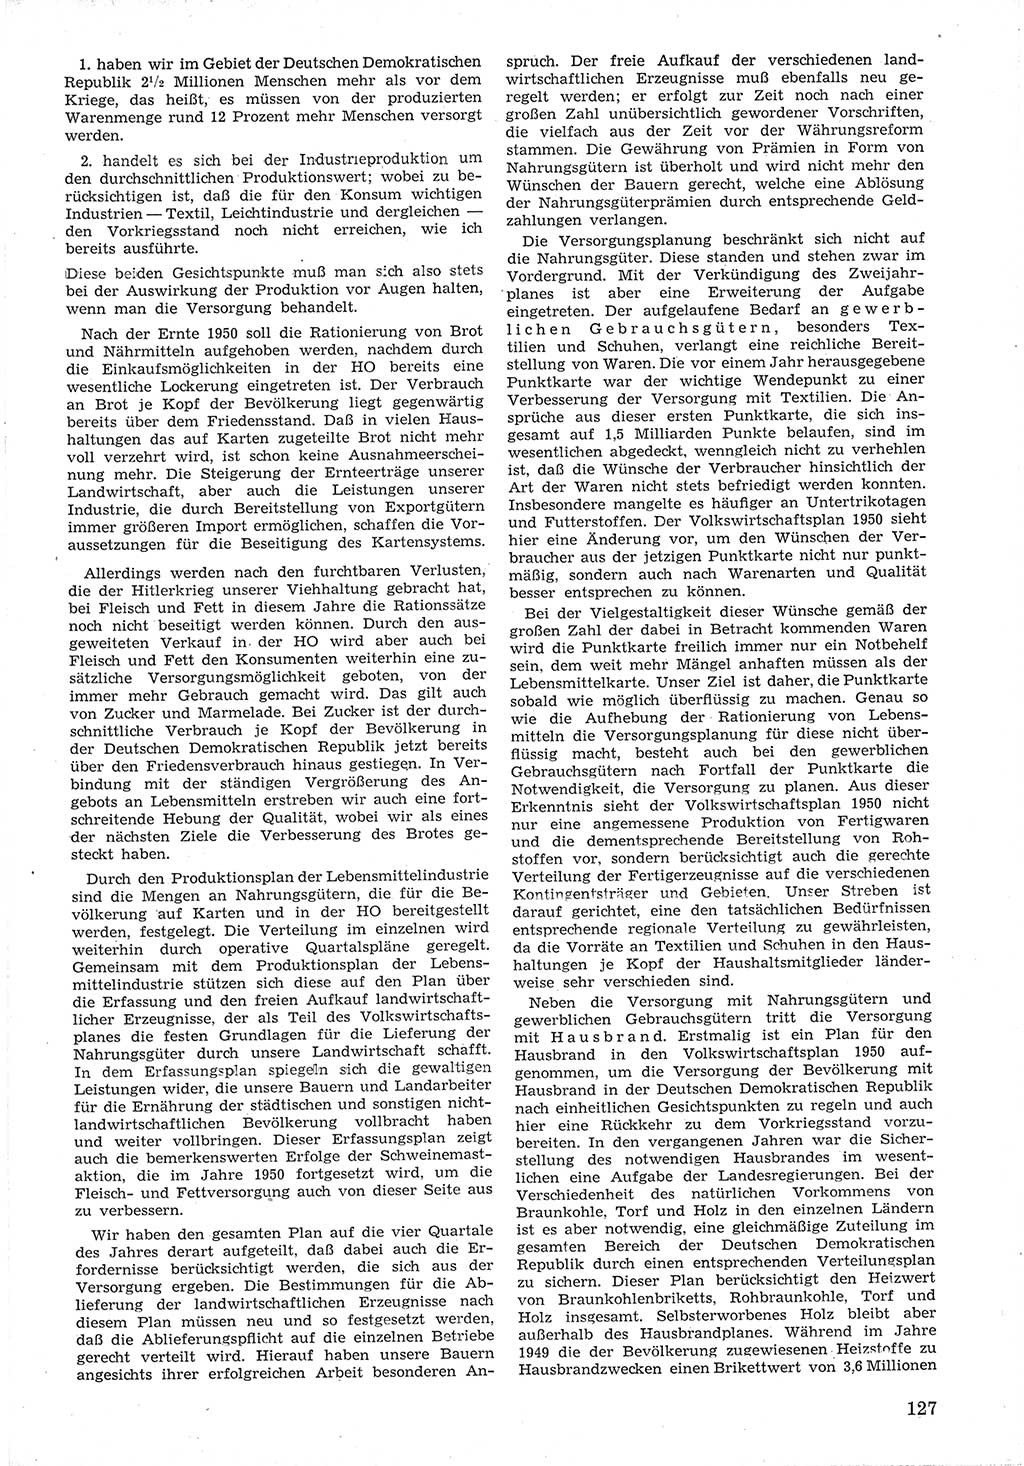 Provisorische Volkskammer (VK) der Deutschen Demokratischen Republik (DDR) 1949-1950, Dokument 139 (Prov. VK DDR 1949-1950, Dok. 139)